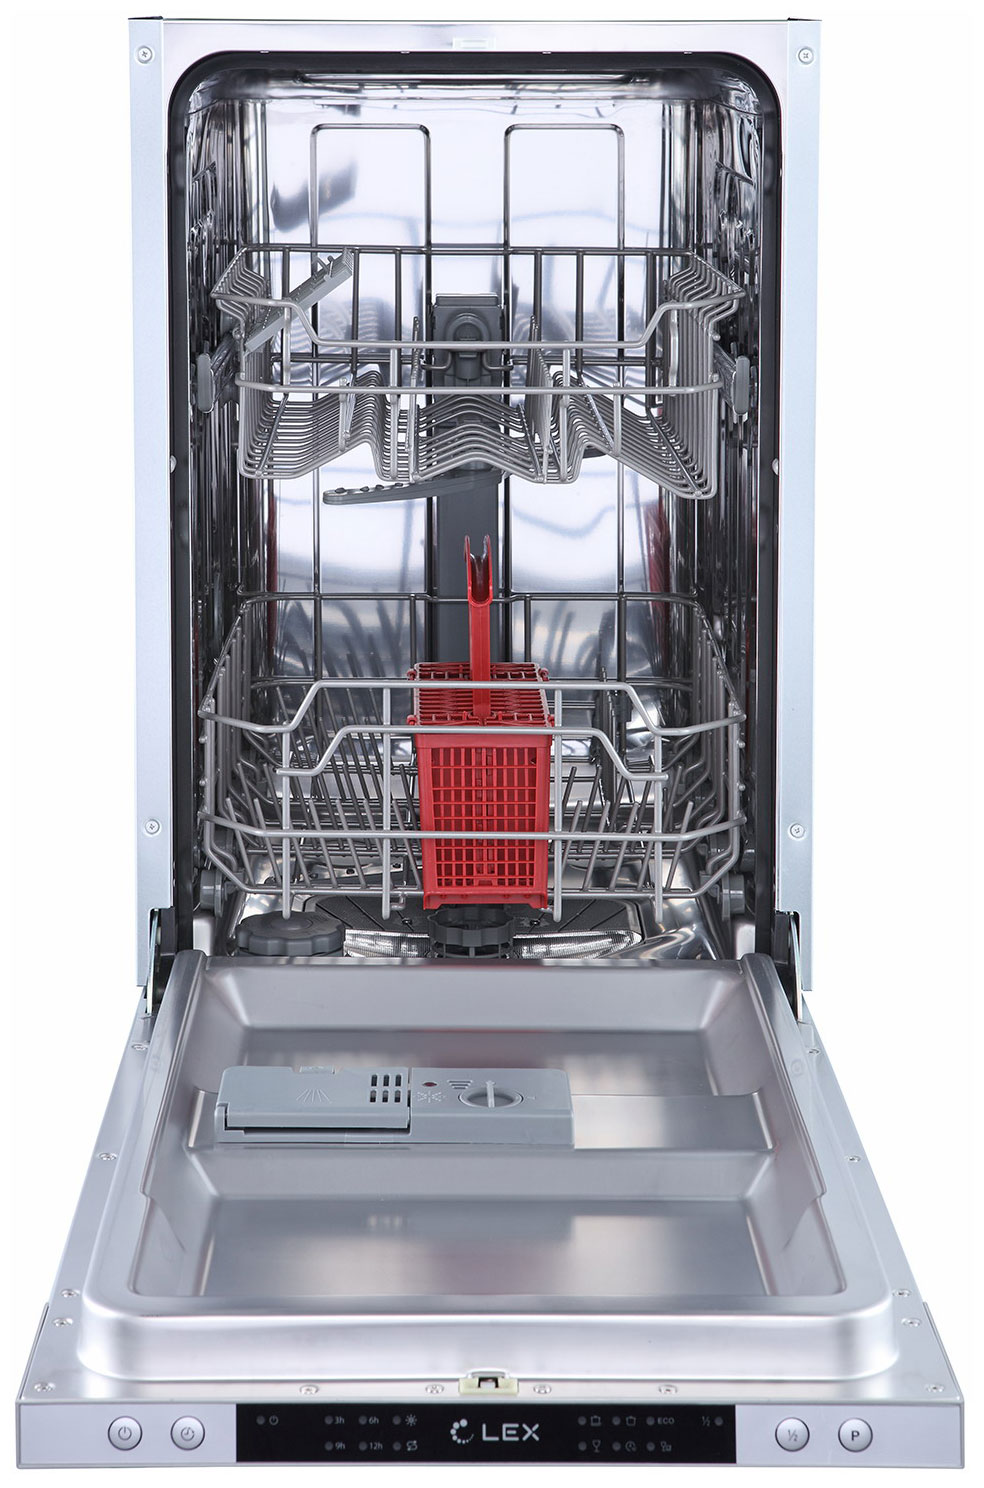 Встраиваемая посудомоечная машина LEX PM 4562 B посудомоечная машина встраиваемая lex pm 6063 a 60 см chmi000202